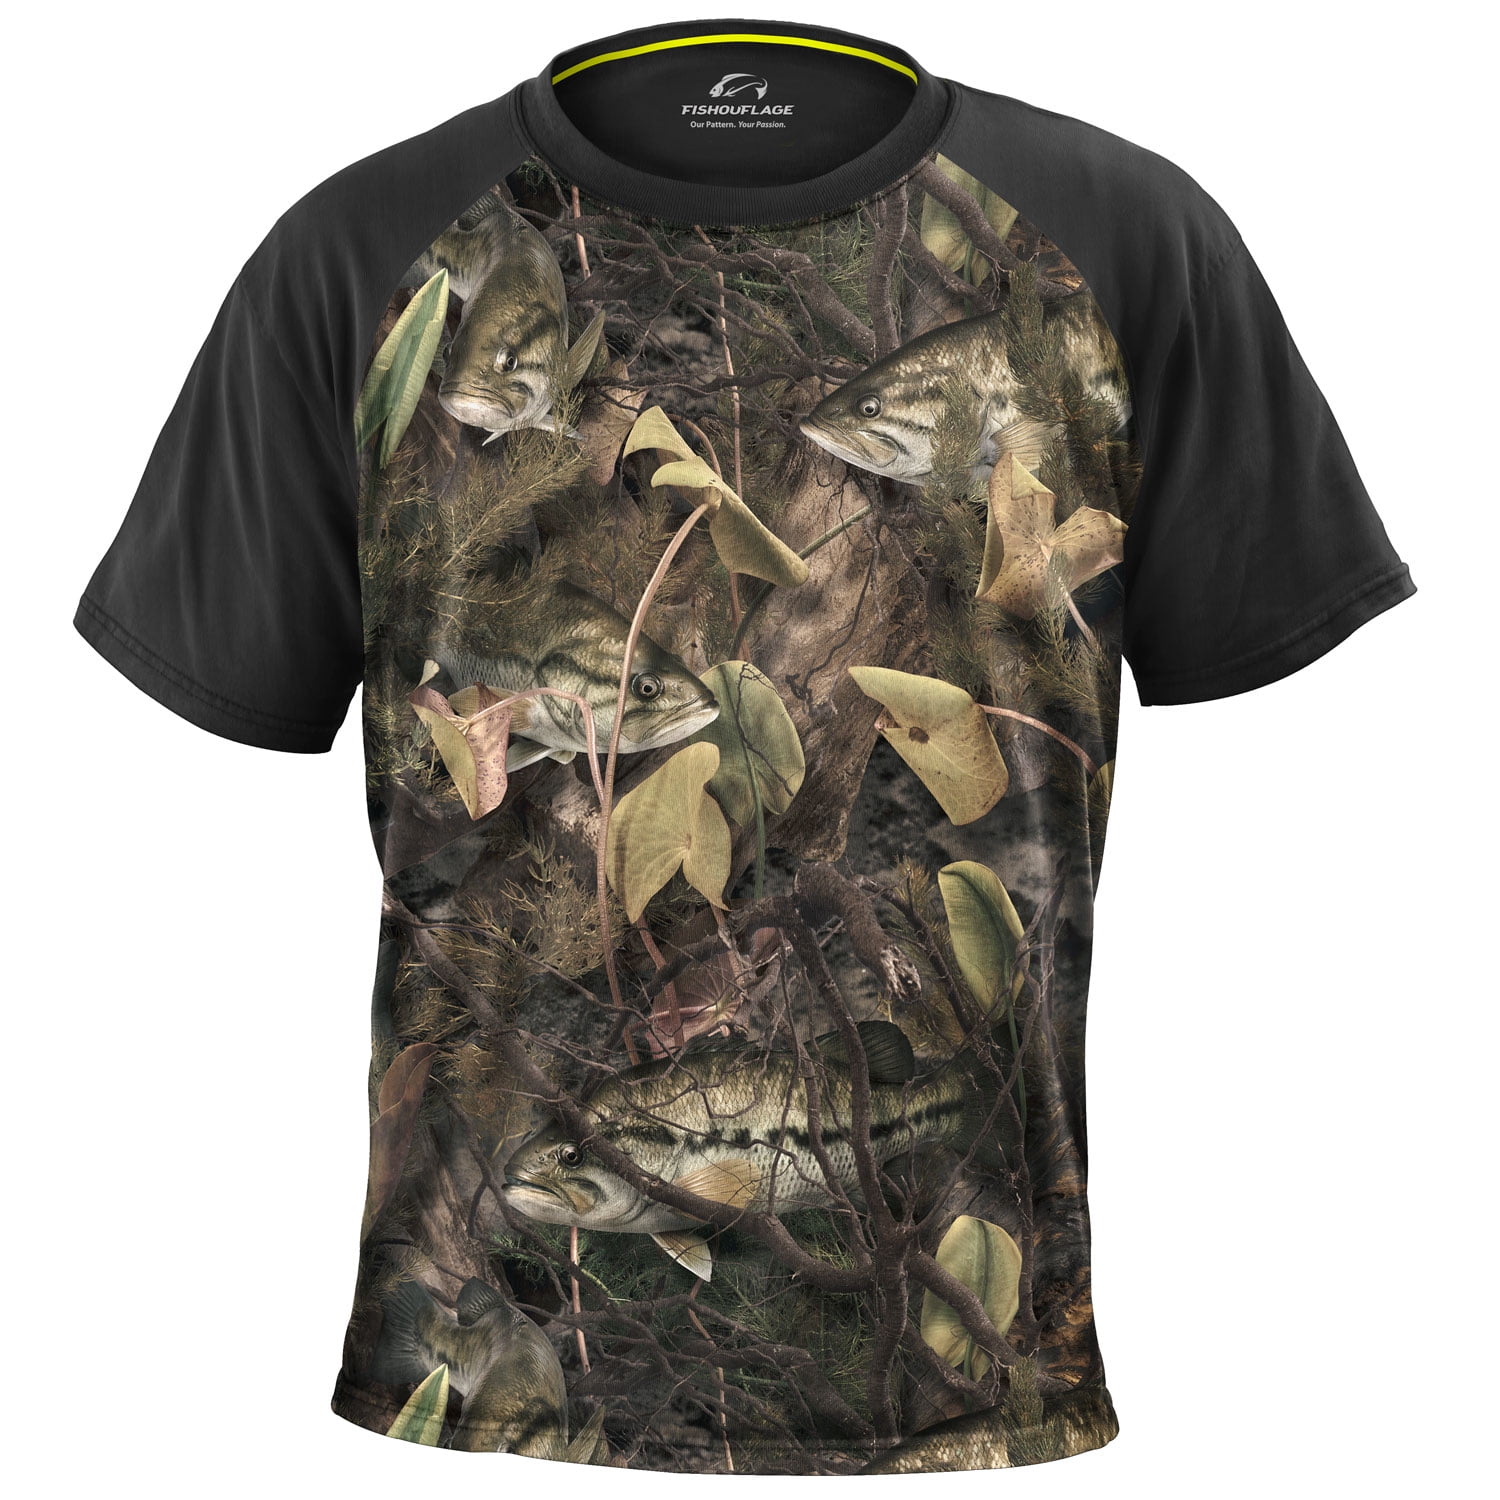 Fishing Shirt Fishing Shirt Sales Fishing Shirt Brands Boys Fishing Shirt 